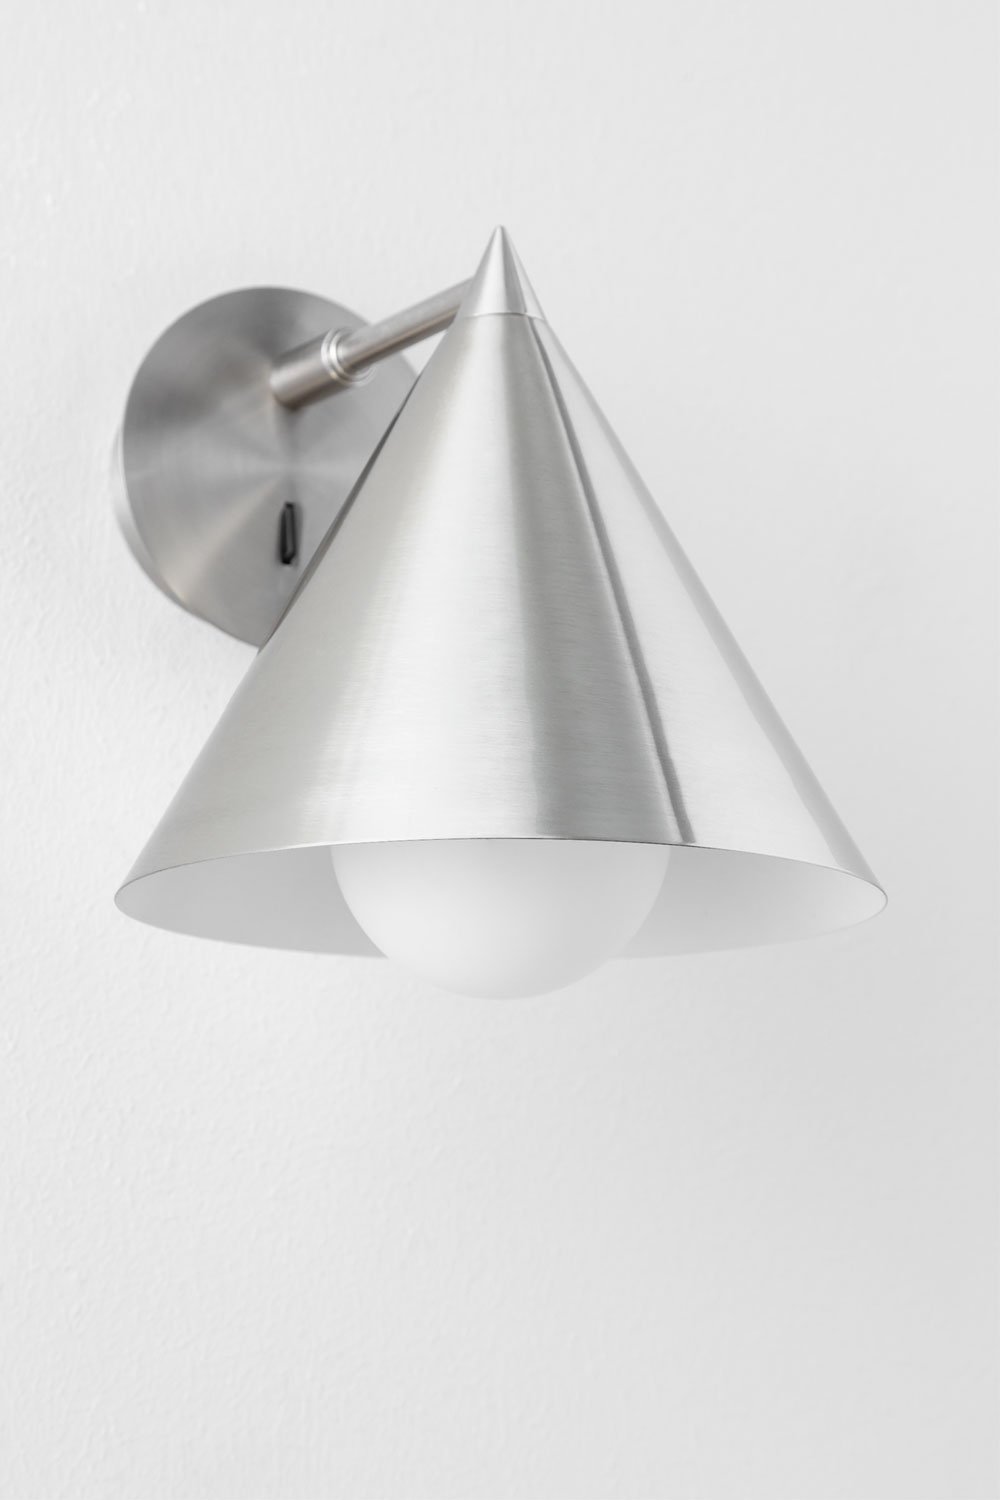 Arilda metalen wandlamp, galerij beeld 1